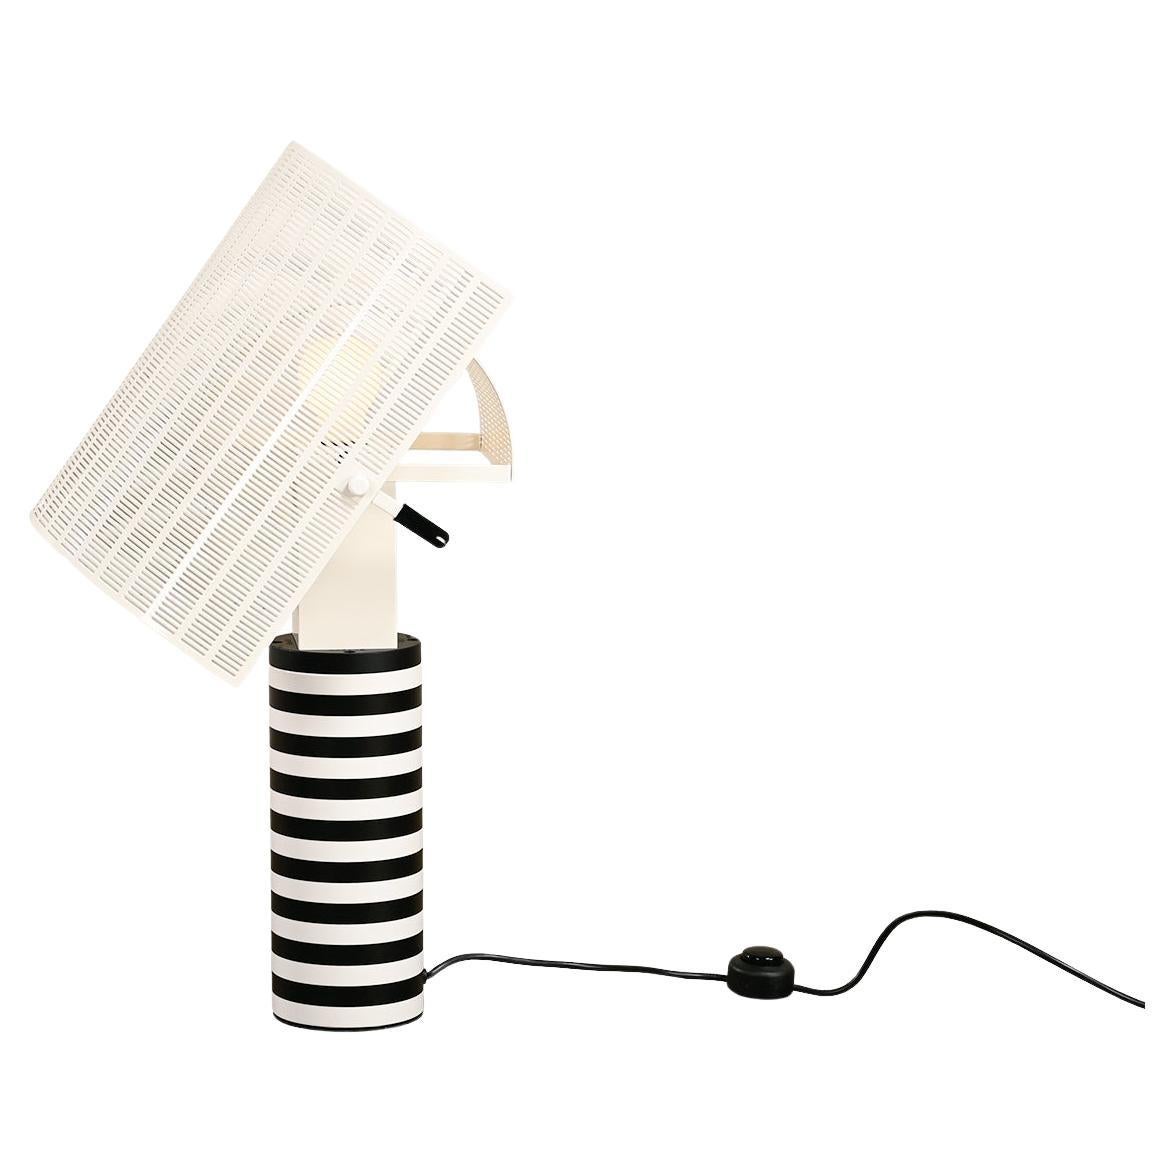 Mario Botta Shogun Tischlampe in Schwarz und Weiß für Artemide, Italien